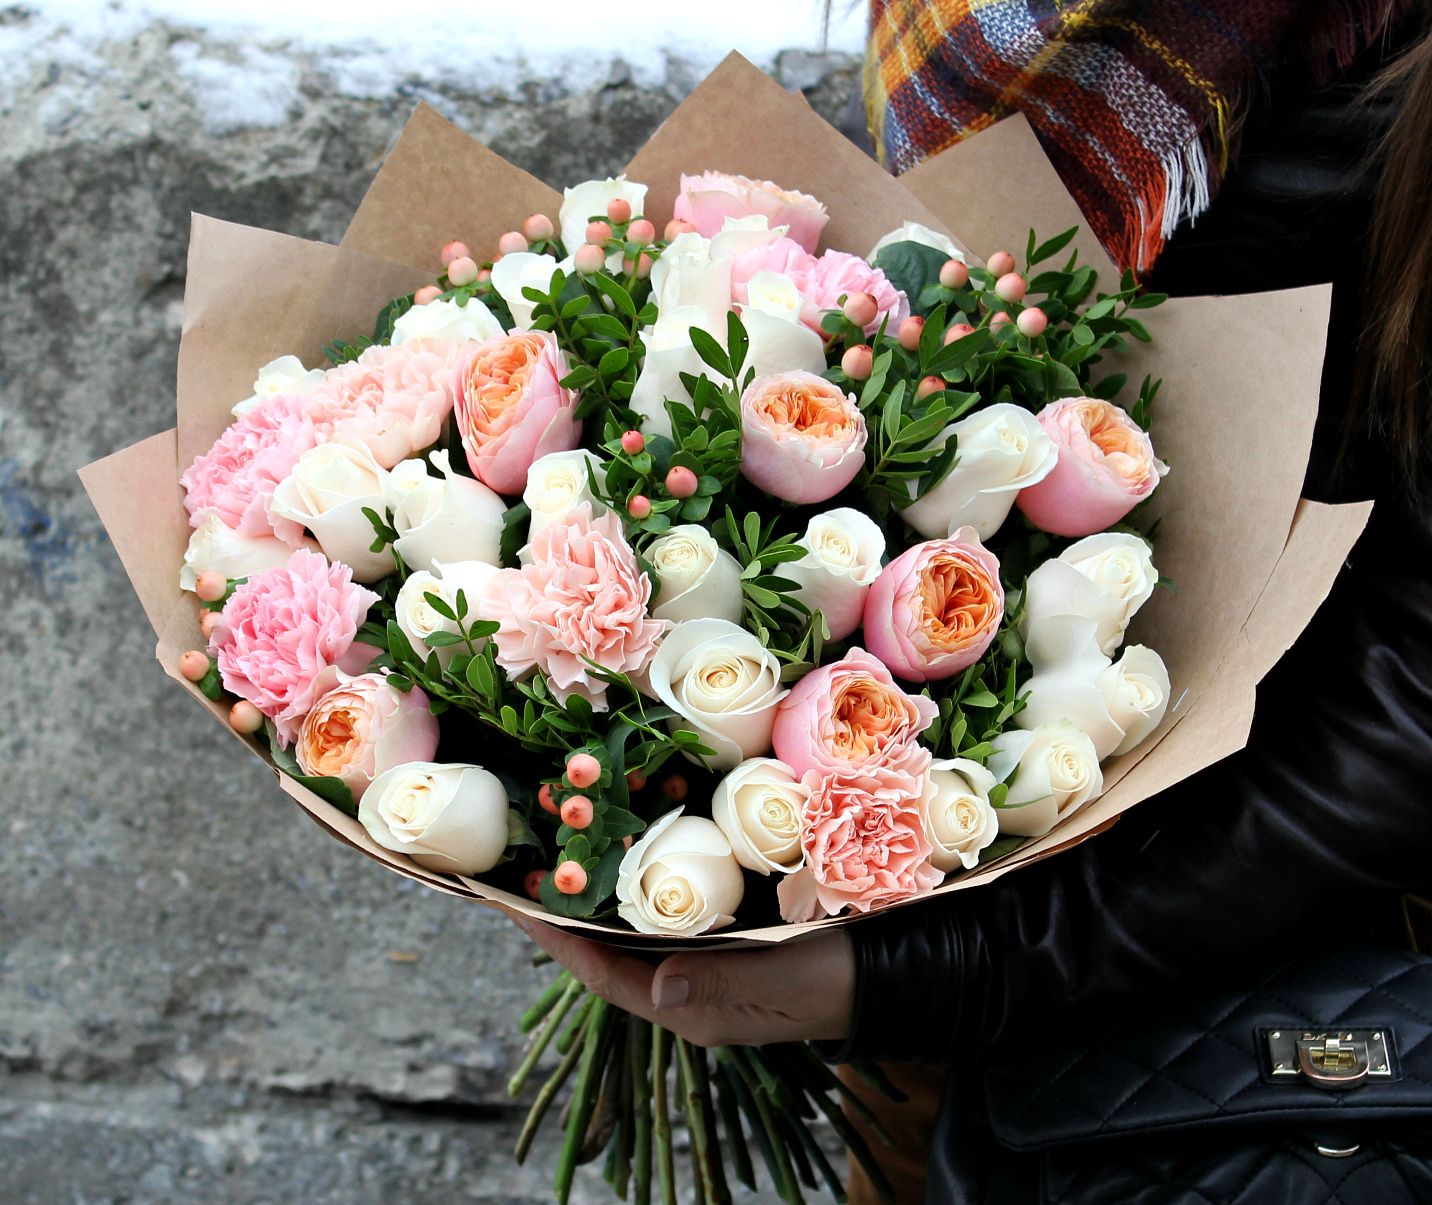 Купить букет с пионовидными розами и гвоздиками в Екатеринбурге | Ирис .